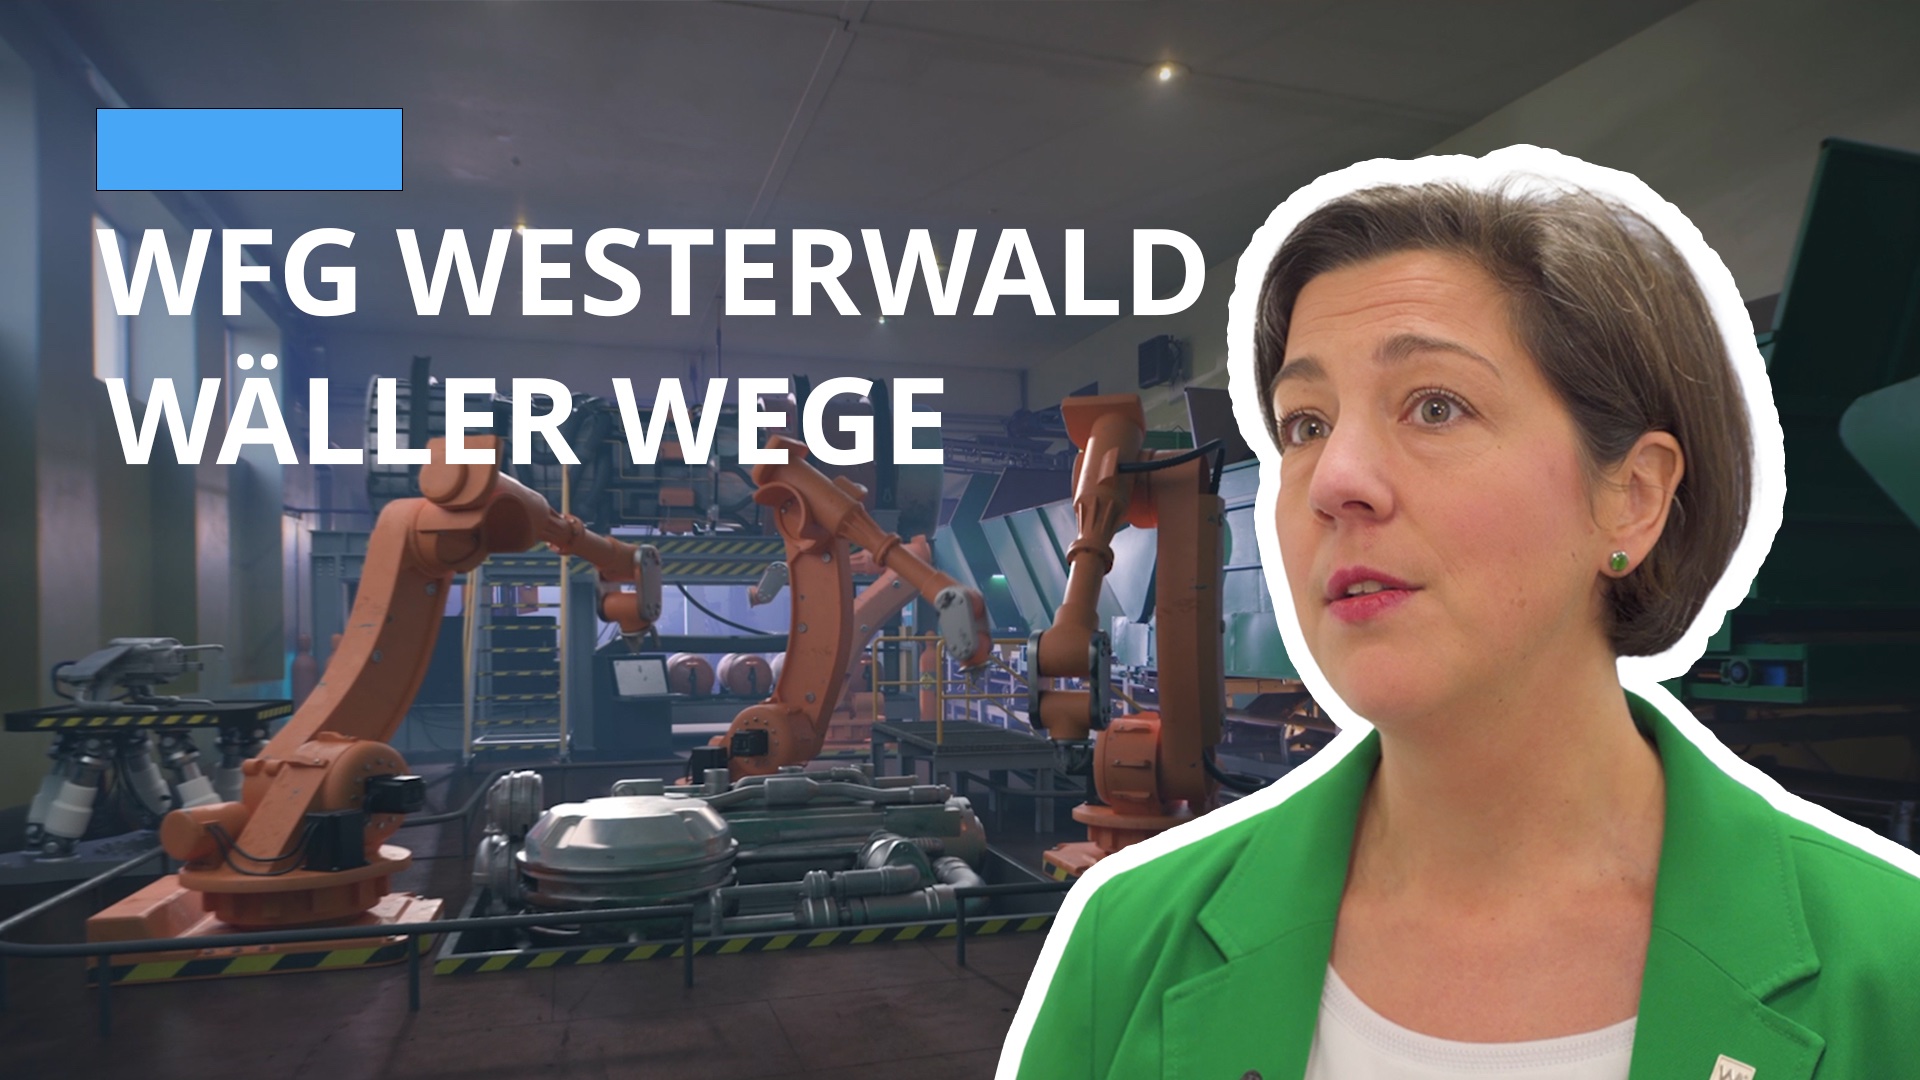 Neue WFG Westerwald Kampagne: Wäller Wege - Zukunftsfähige Unternehmen im Westerwaldkreis